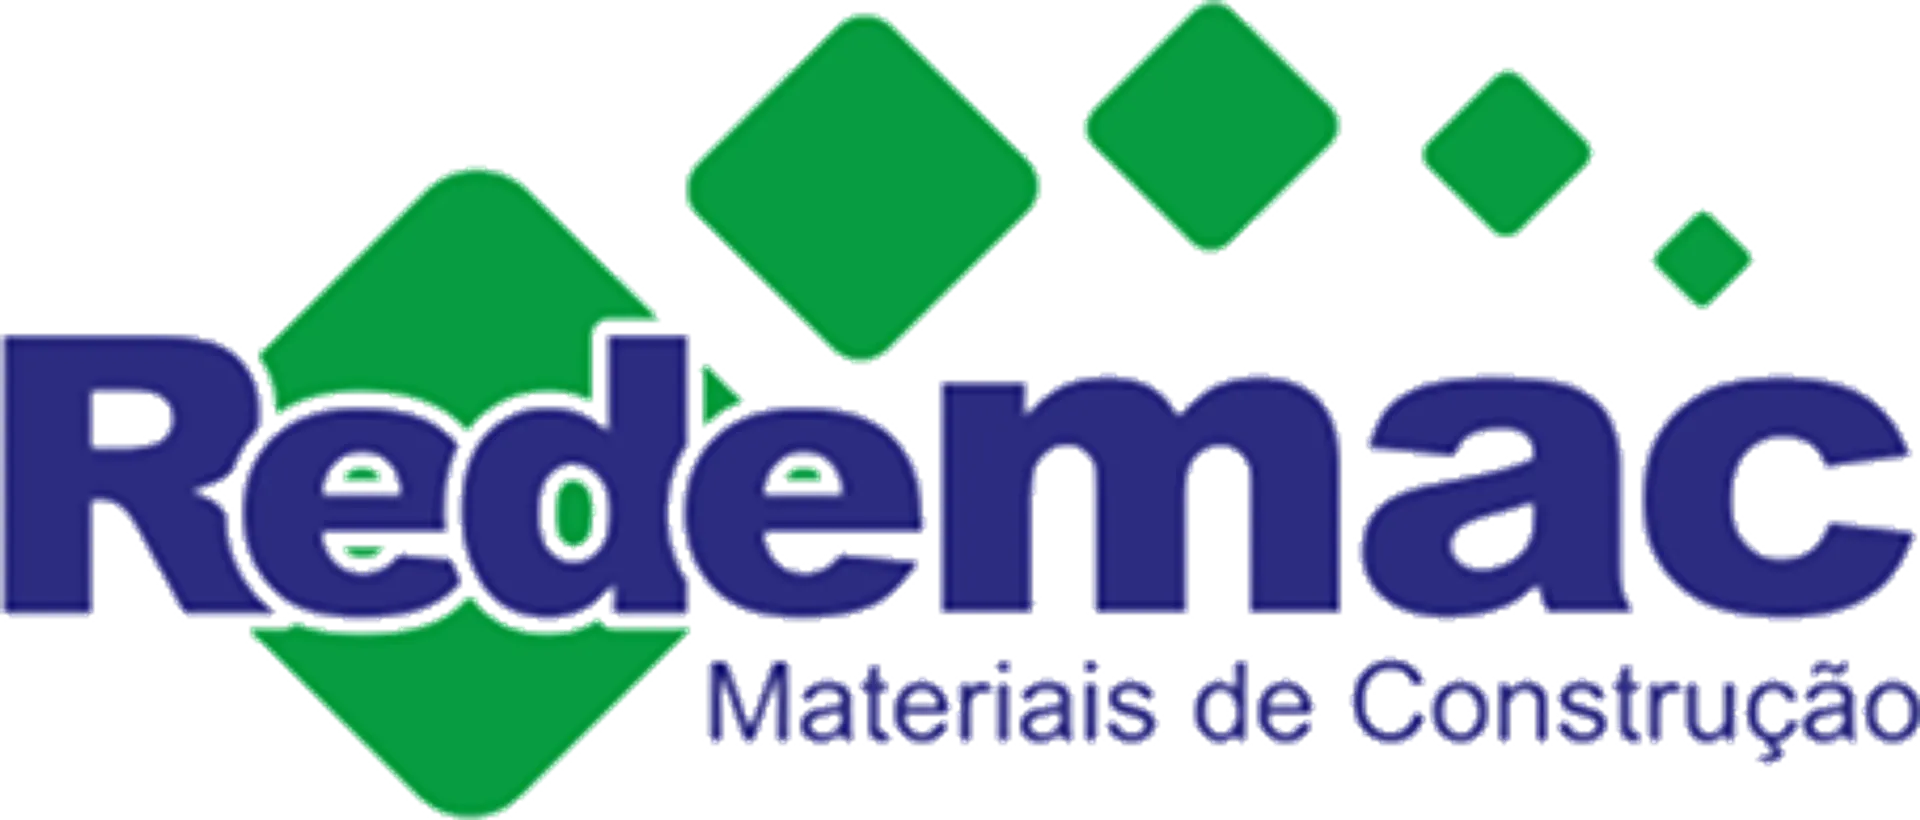 REDEMAC logo